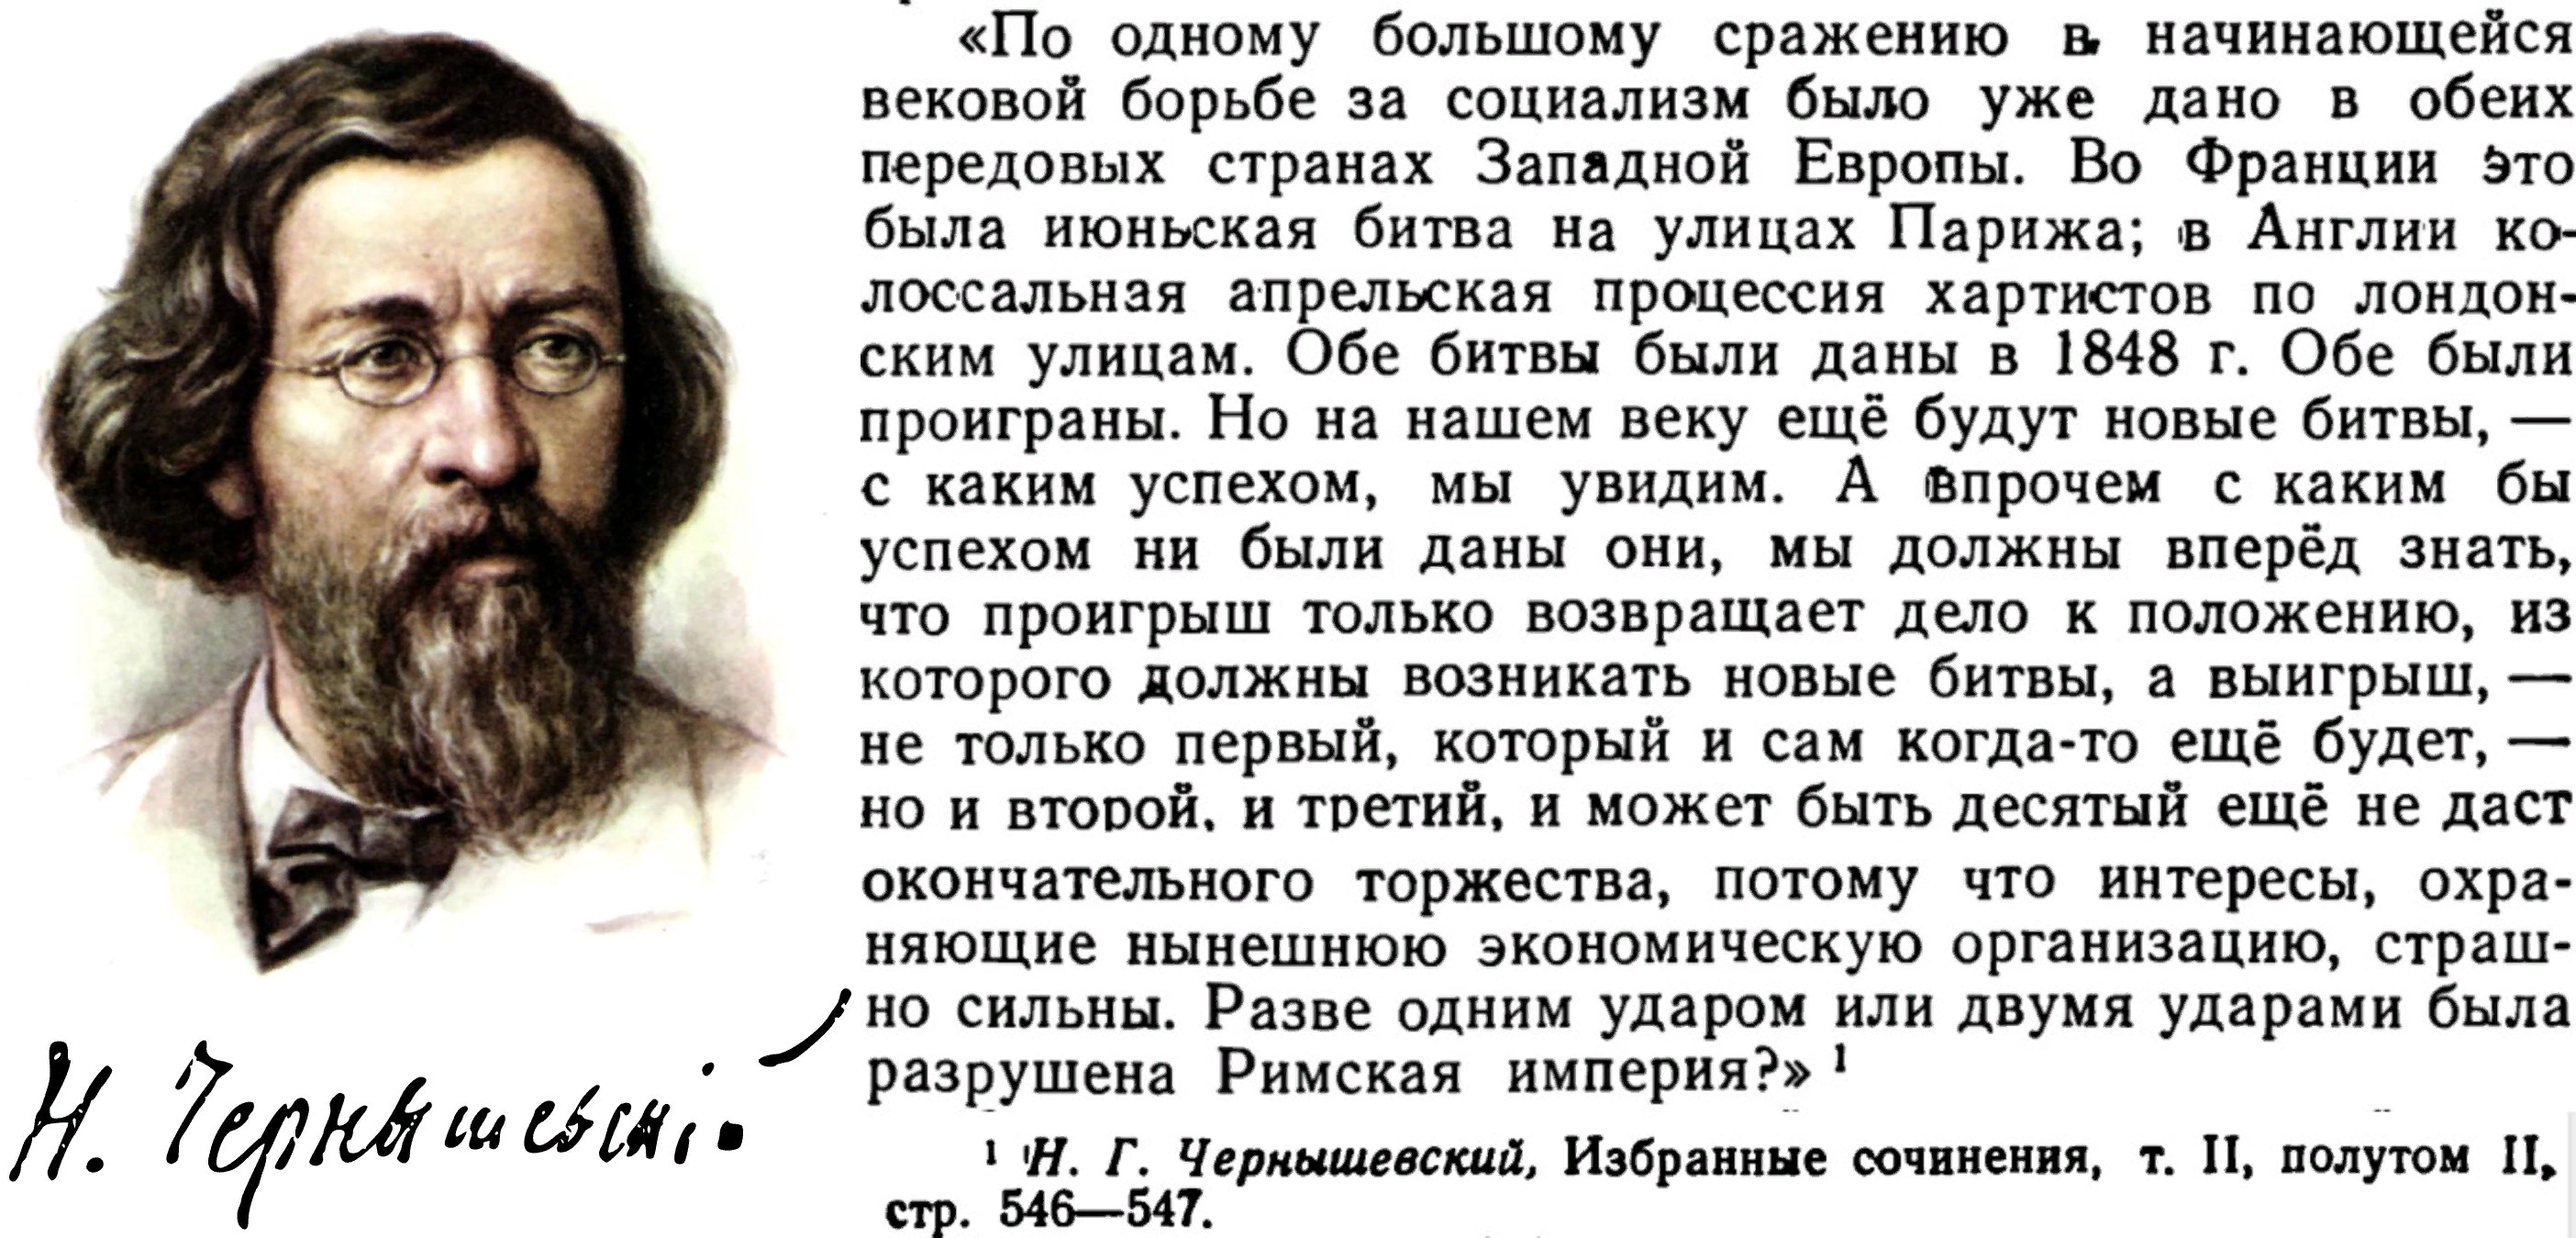 Чернышевский Николай Гаврилович портрет